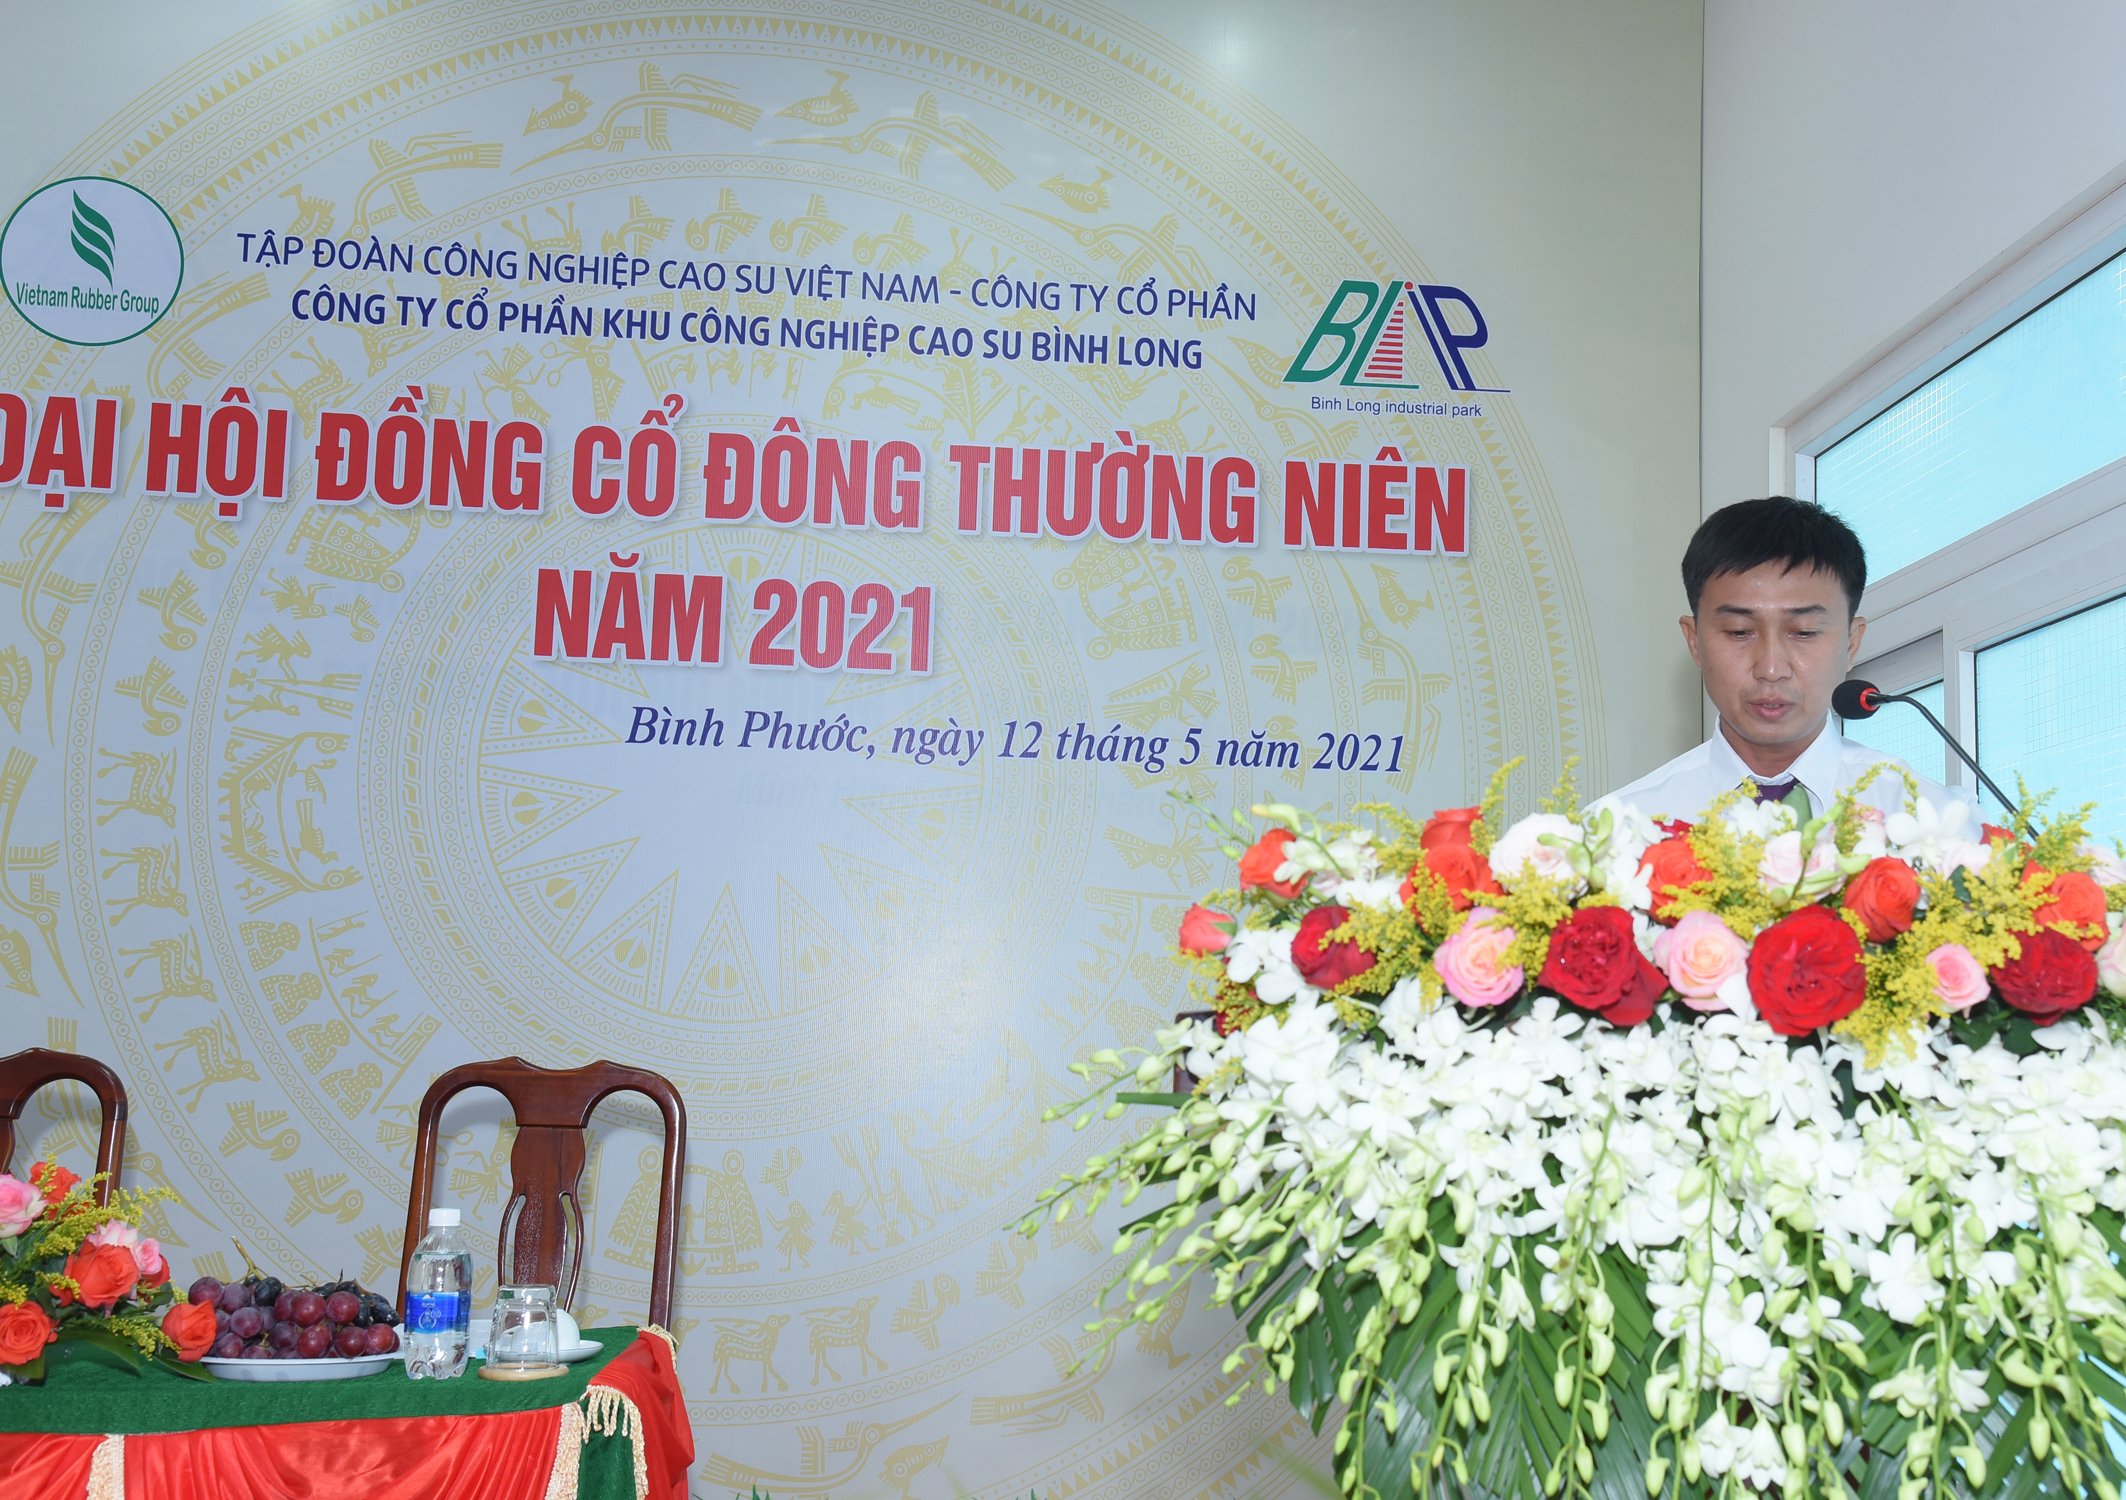 Ông Huỳnh Văn Thi – Trưởng Ban kiểm tra tư cách CĐ & Ban kiểm phiếu, thực hiện báo cáo kết quả kiểm tra tư cách cổ đông tham dự Đại hội